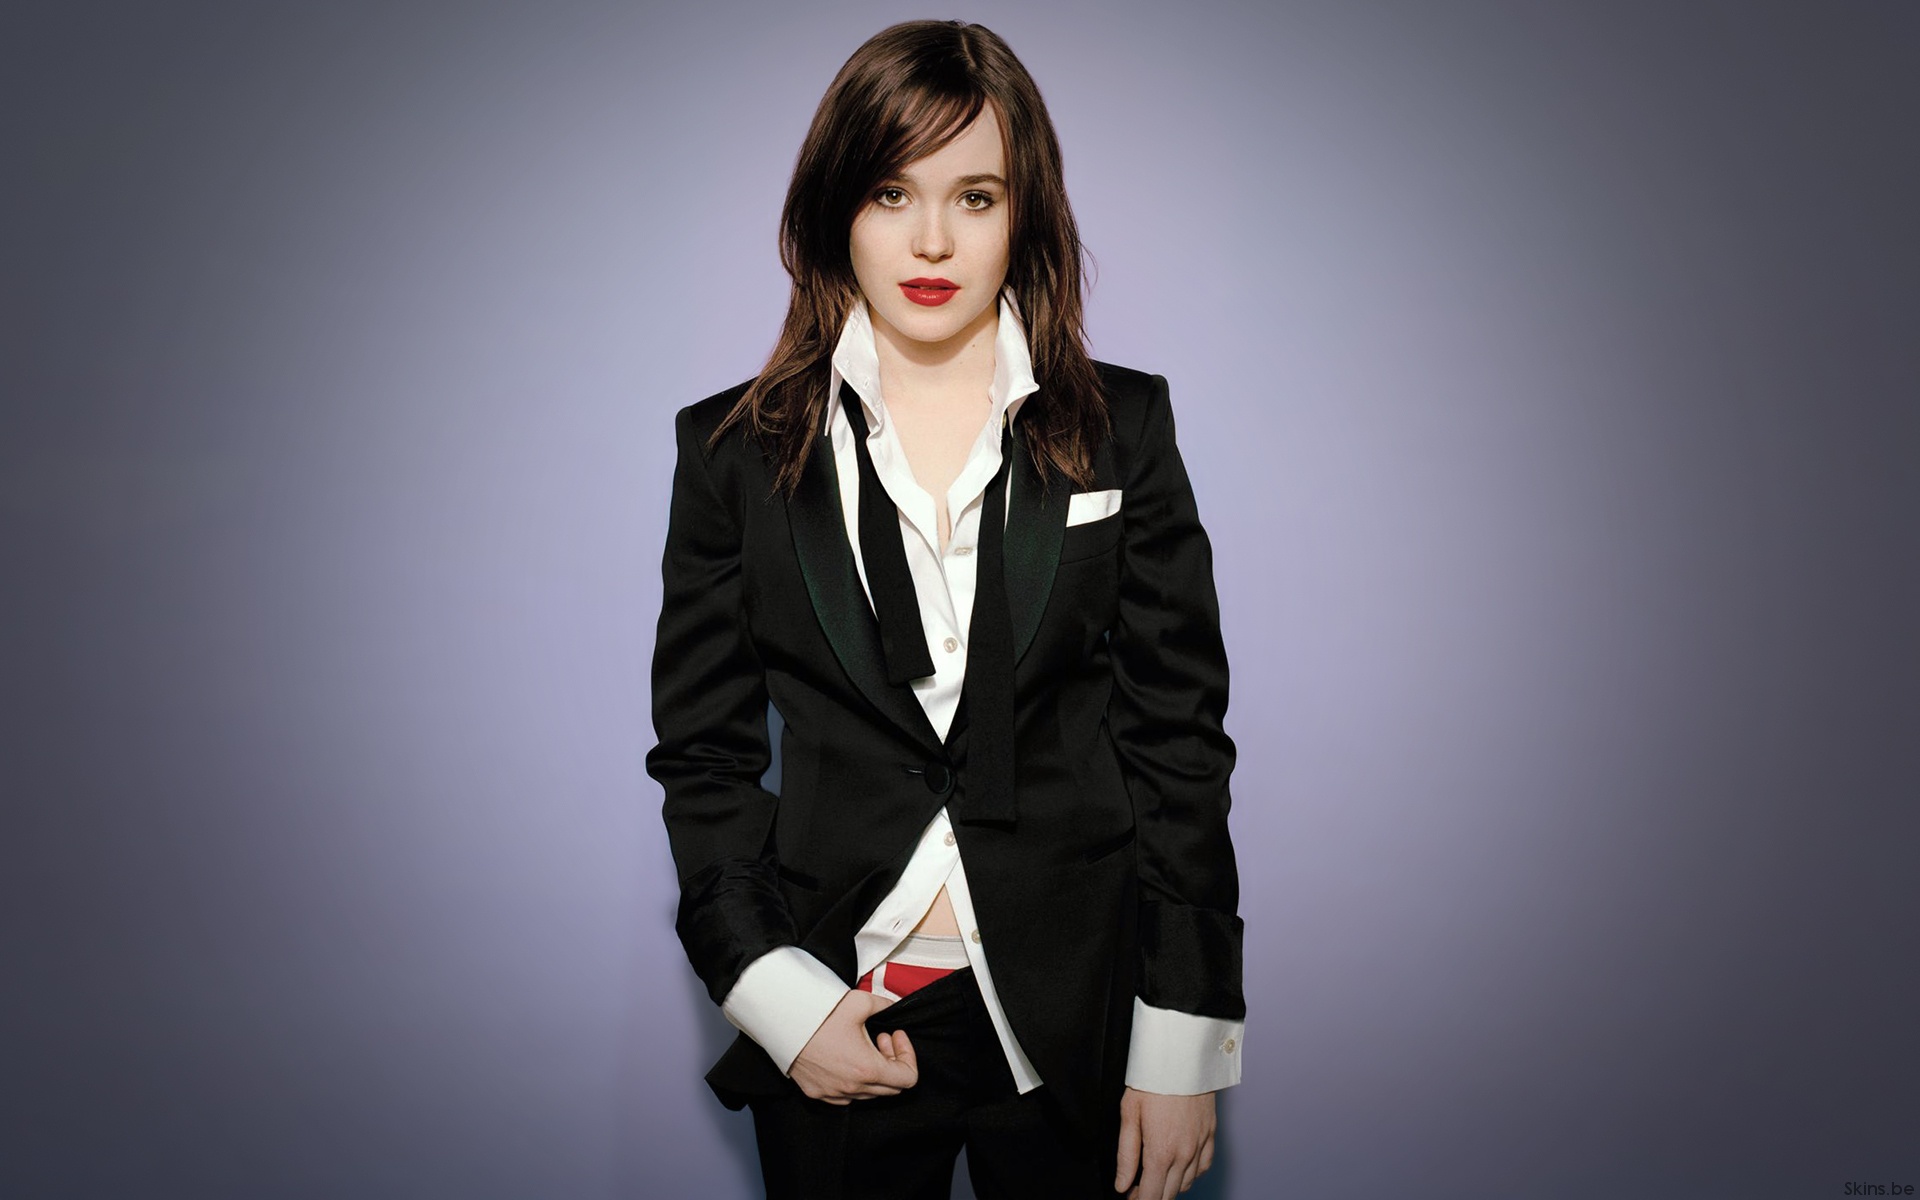  Ellen Page Cellphone FHD pic